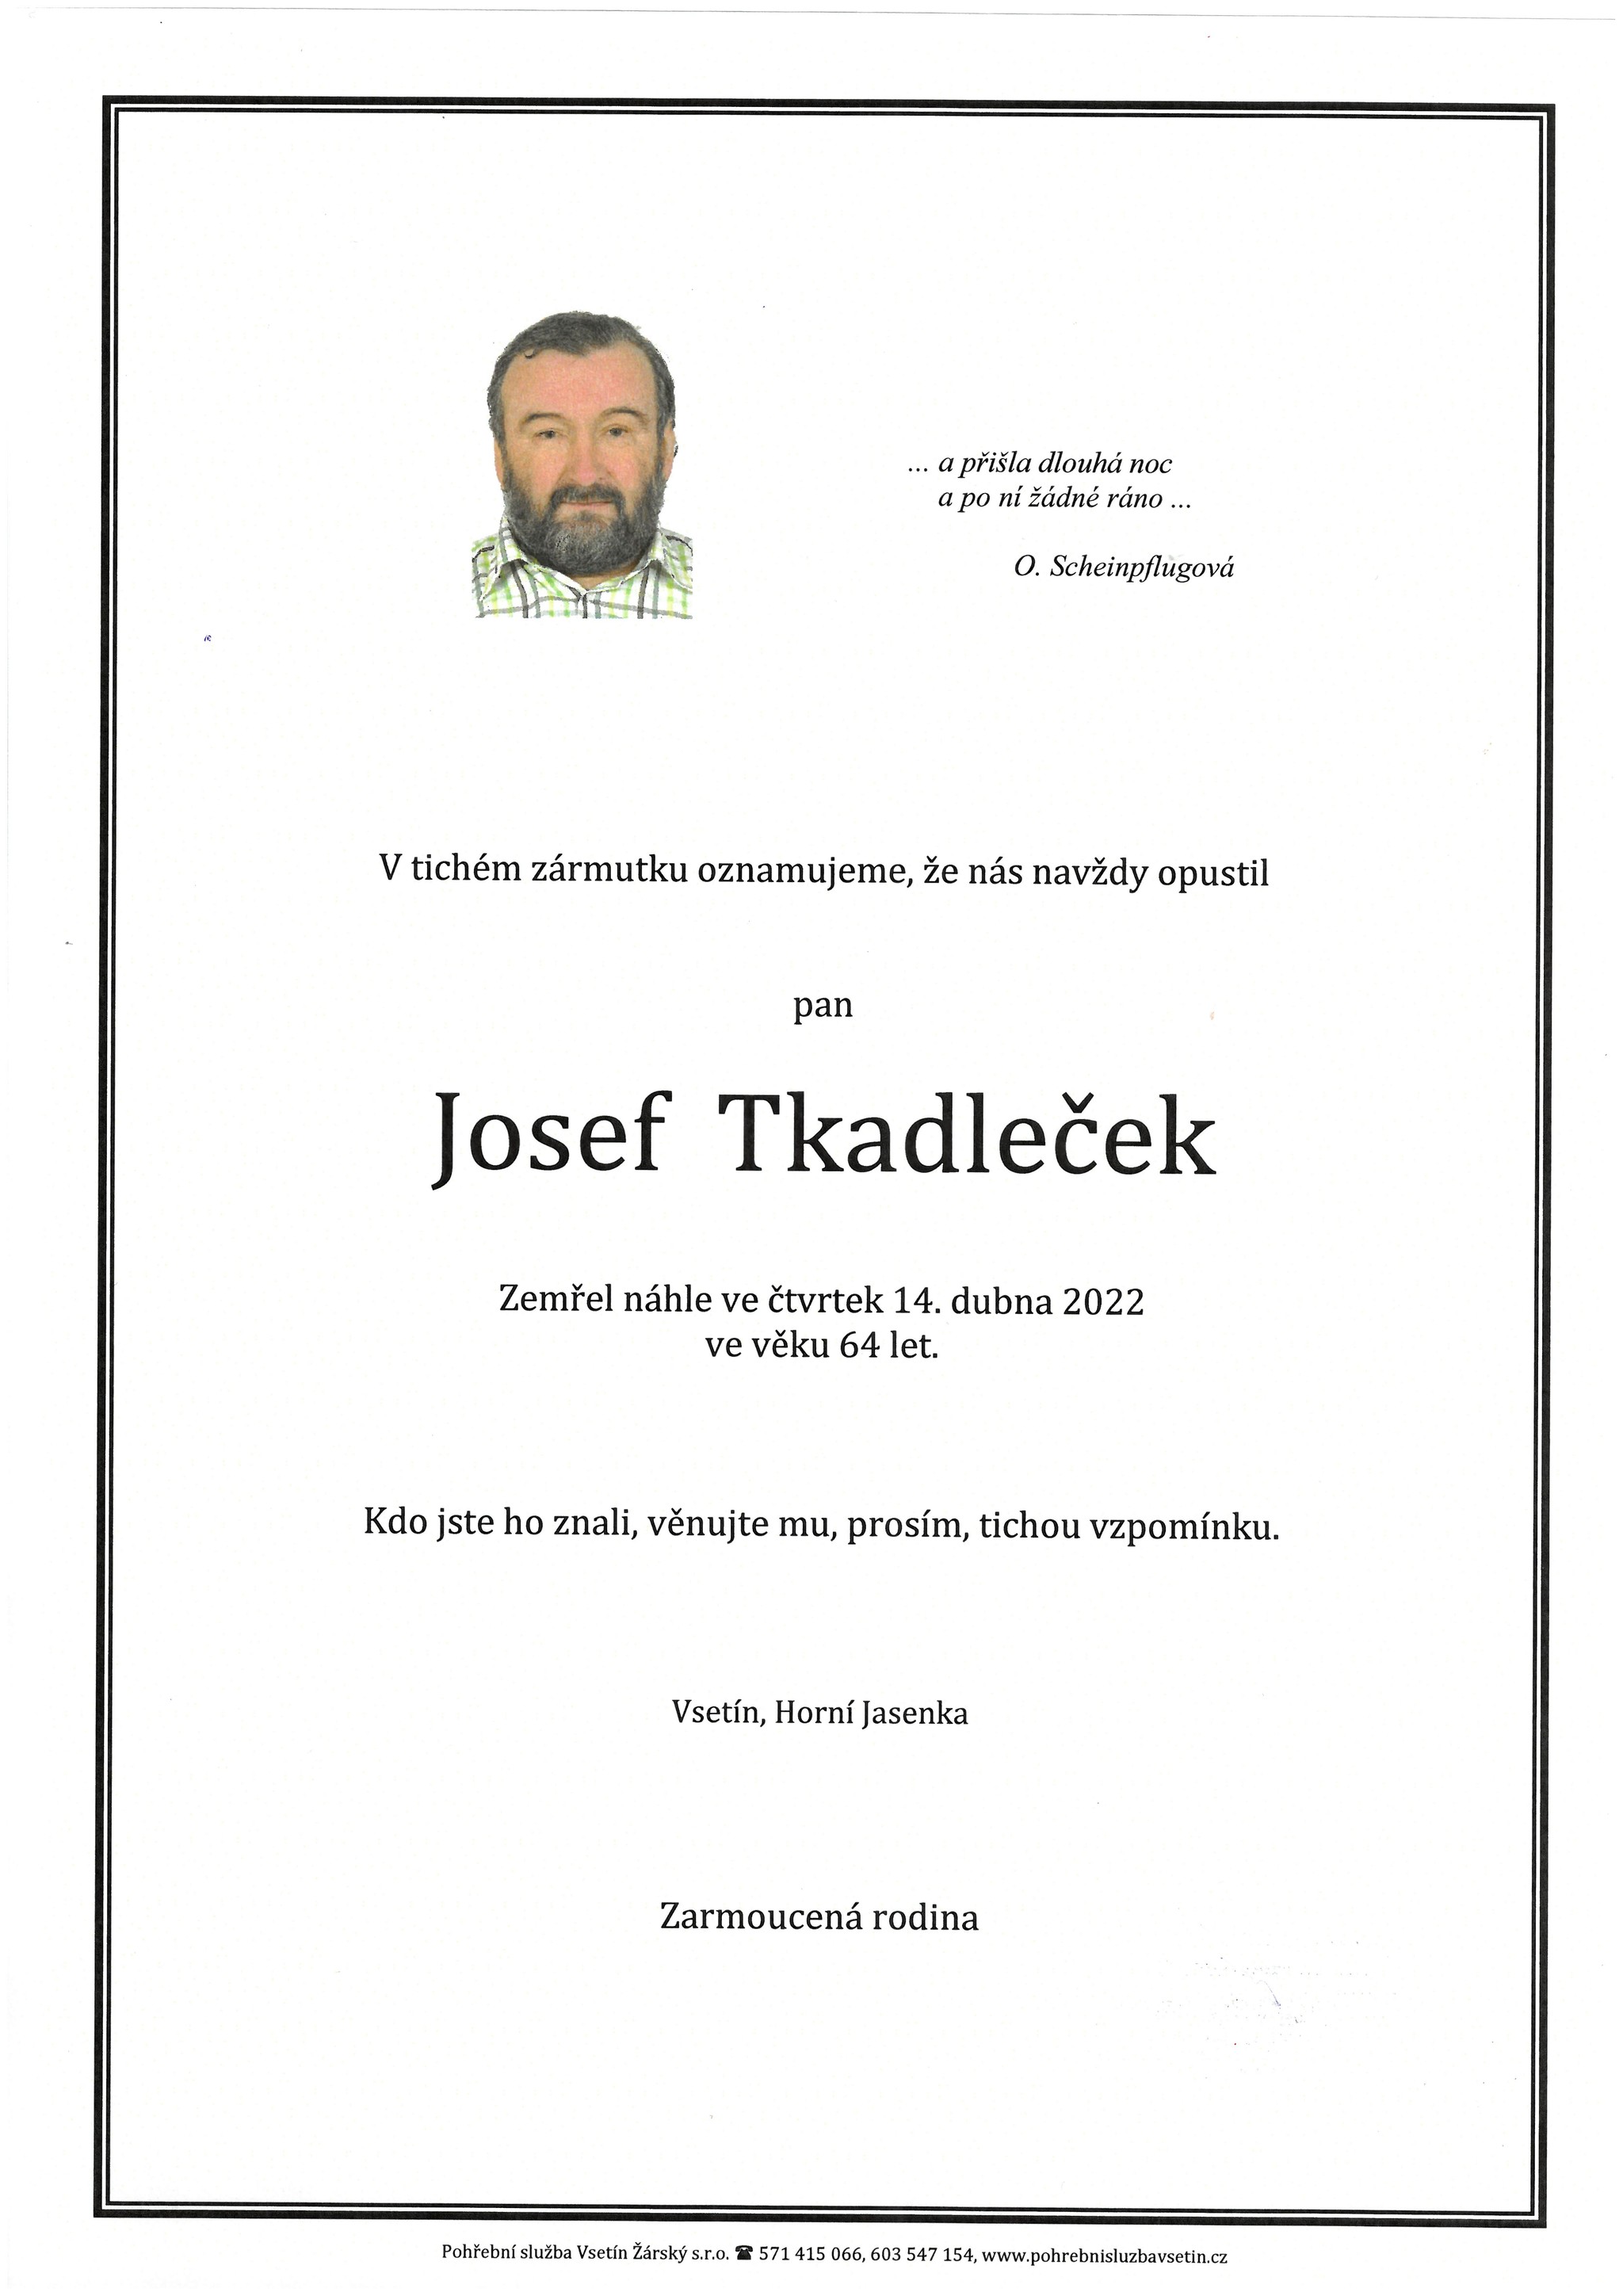 Josef Tkadleček